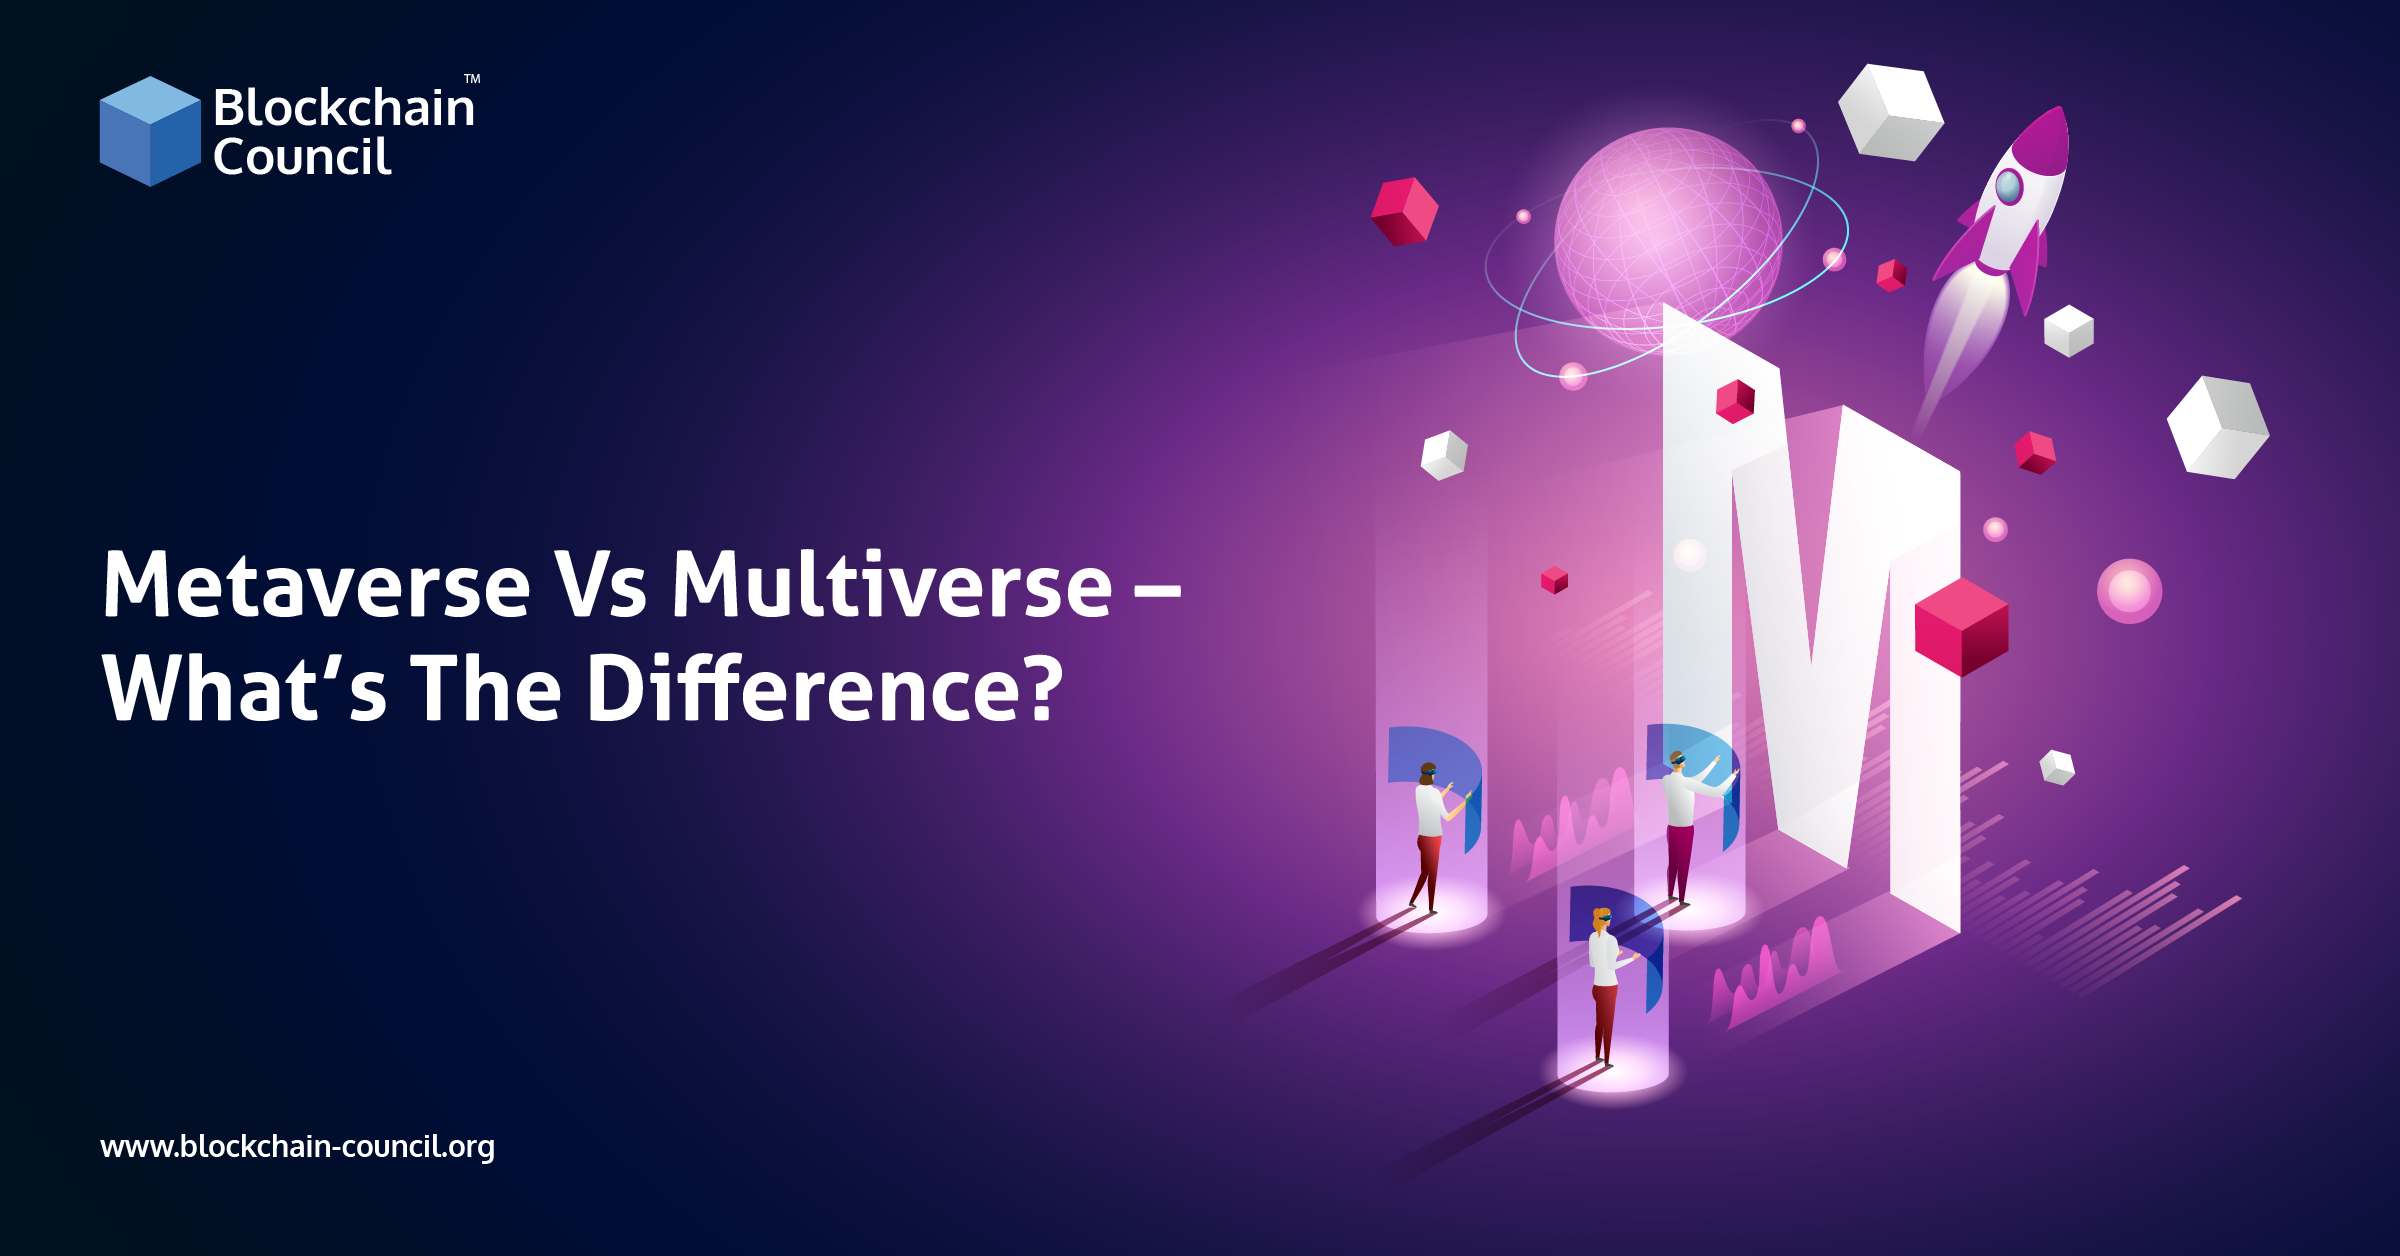 Qual a diferença entre METAVERSO E MULTIVERSO?